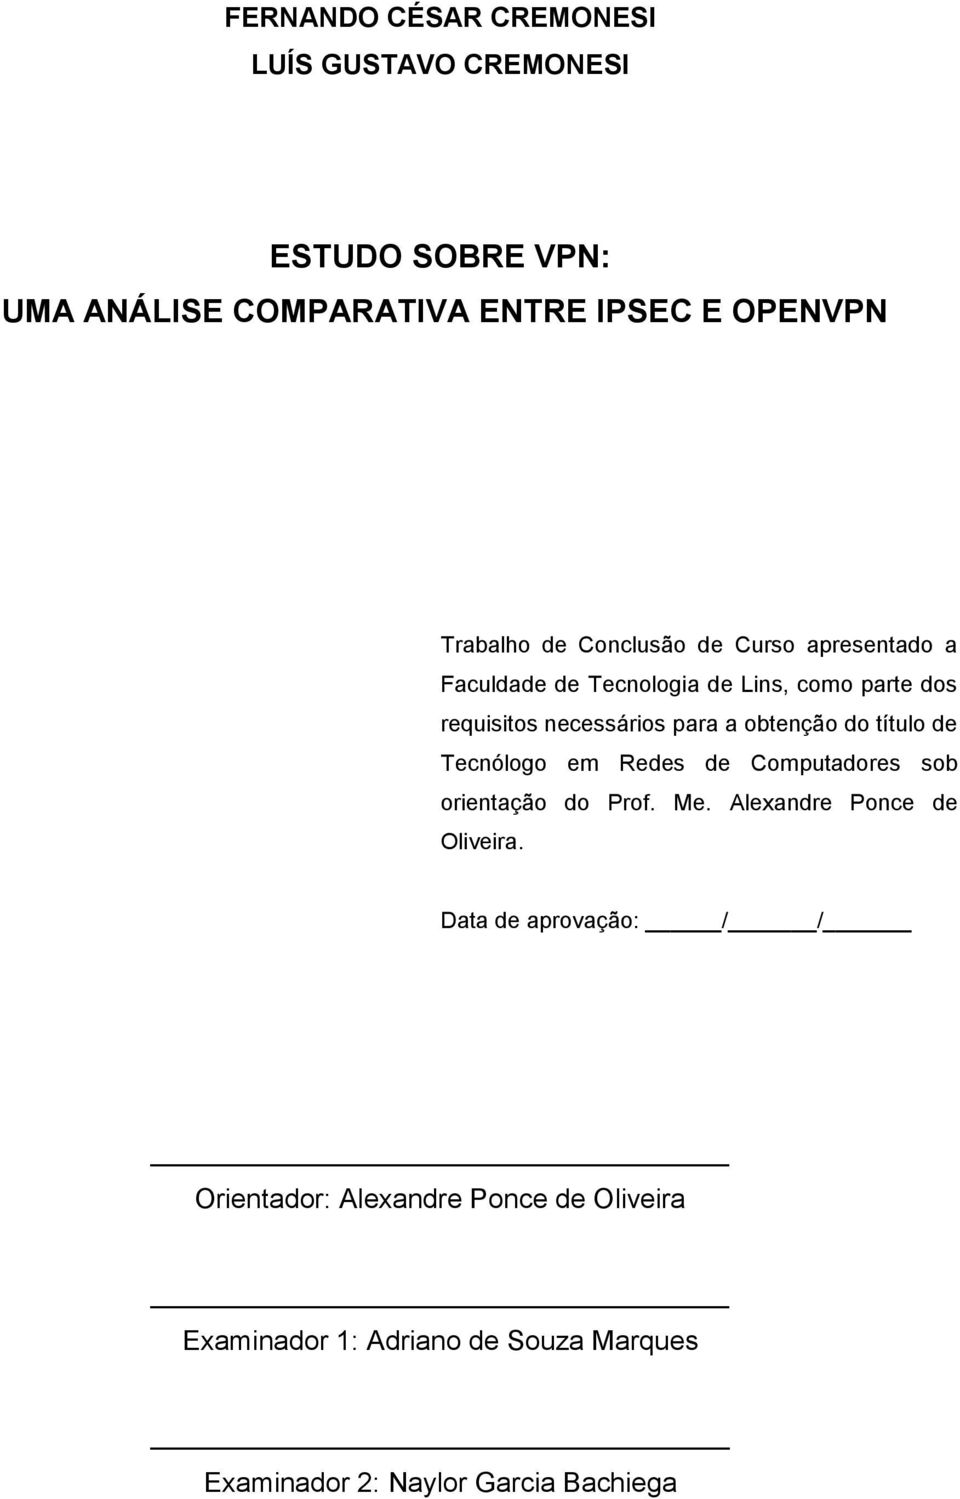 obtenção do título de Tecnólogo em Redes de Computadores sob orientação do Prof. Me. Alexandre Ponce de Oliveira.